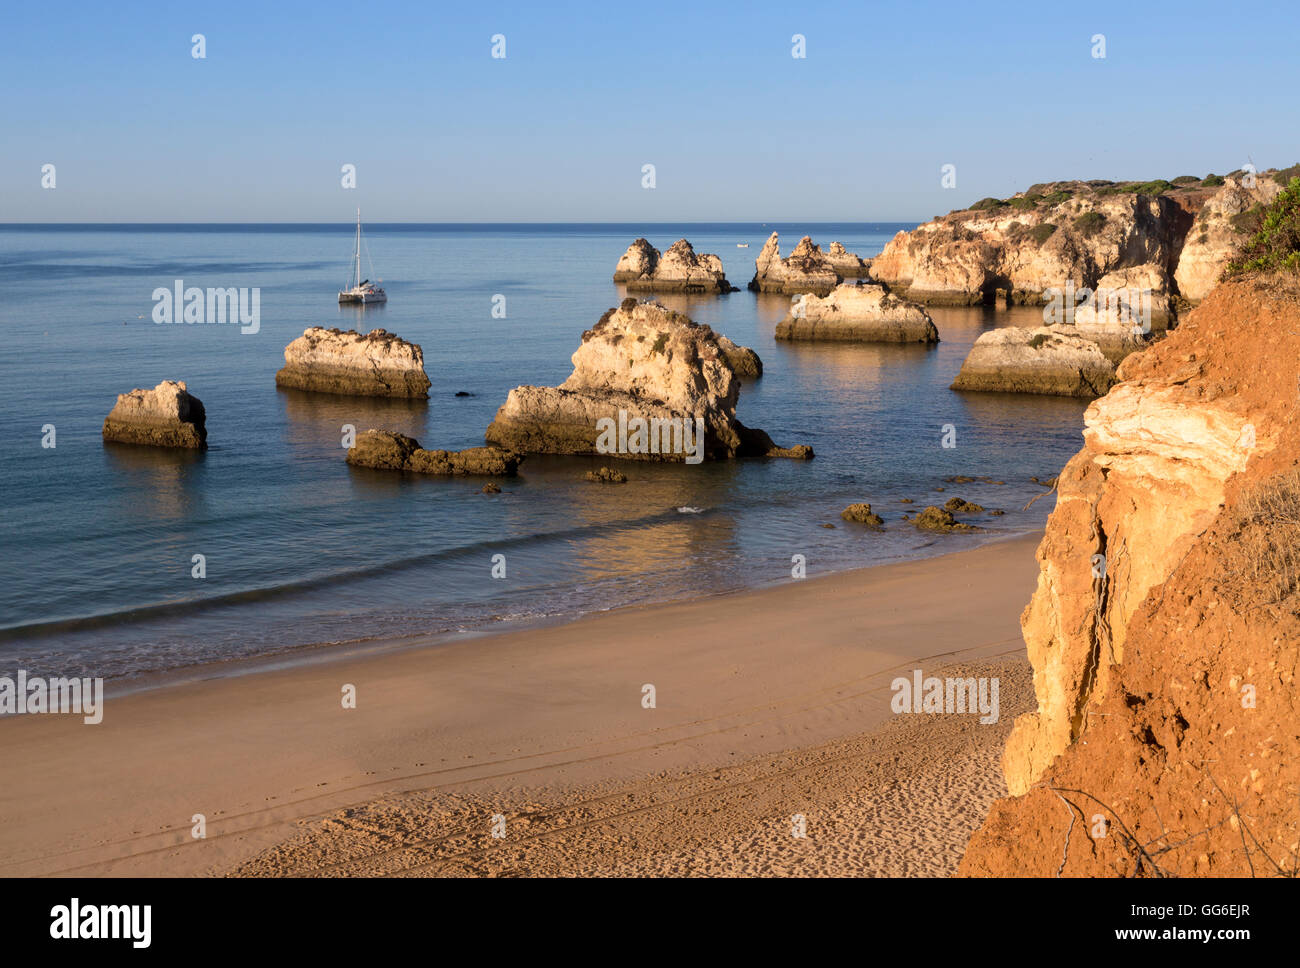 Vista della spiaggia di sabbia fine bagnata dall'oceano blu all'alba, Praia do Alemao, Portimao, distretto di Faro, Algarve, PORTOGALLO Foto Stock